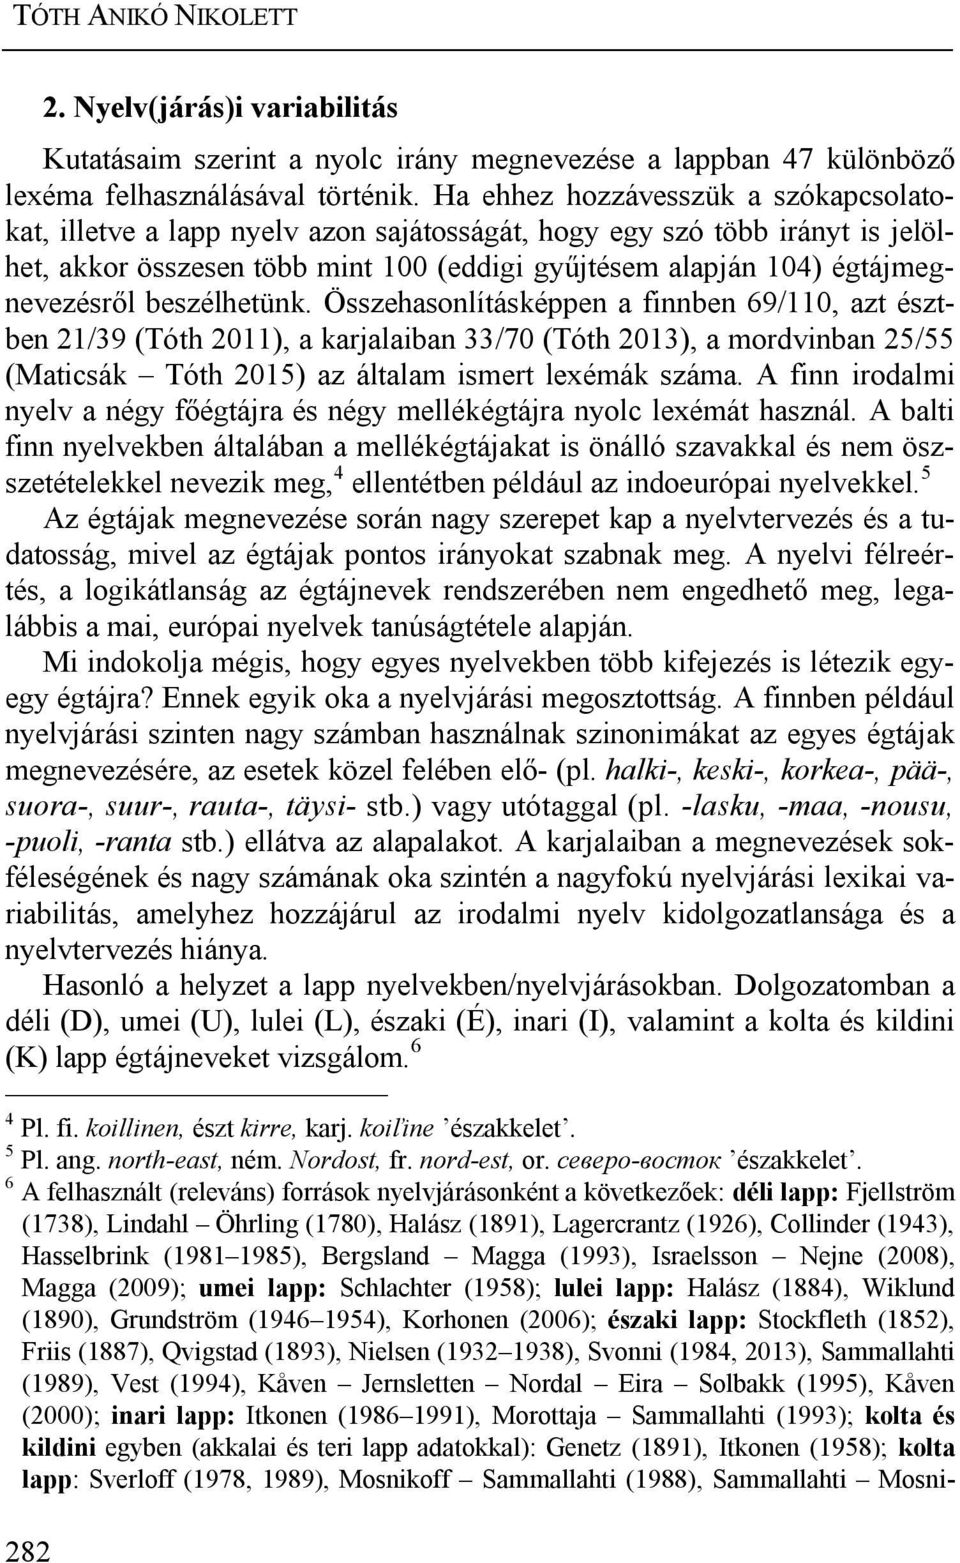 beszélhetünk. Összehasonlításképpen a finnben 69/110, azt észtben 21/39 (Tóth 2011), a karjalaiban 33/70 (Tóth 2013), a mordvinban 25/55 (Maticsák Tóth 2015) az általam ismert lexémák száma.